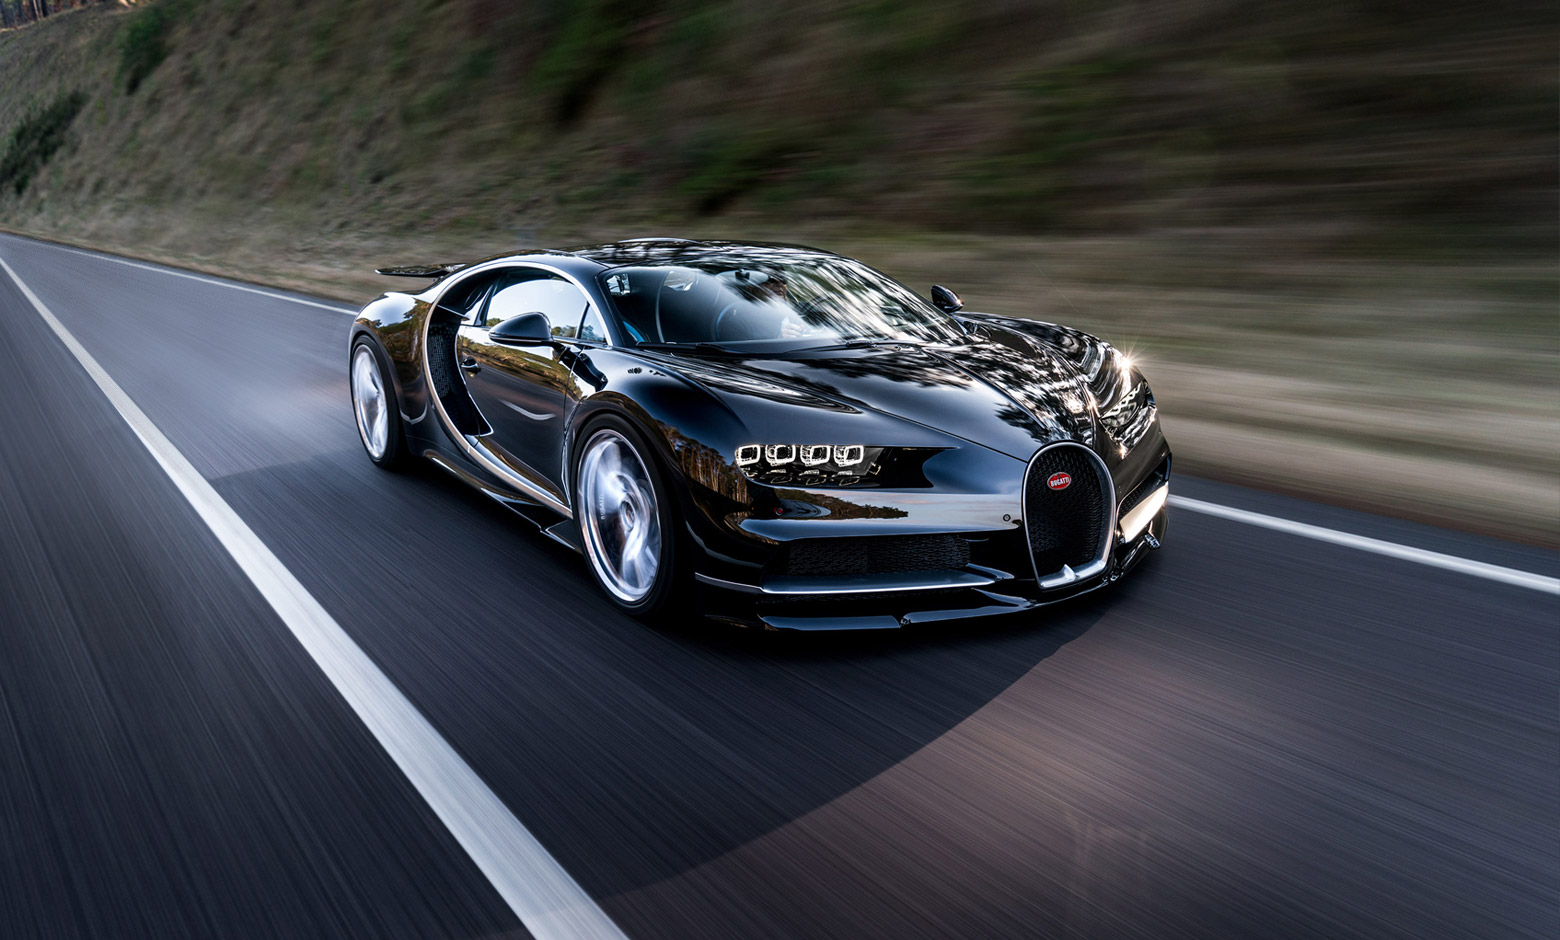 Bugatti Chiron - một trong những siêu xe hiếm có và đắt giá nhất thế giới. Tuy nhiên, bạn không cần phải chi tiêu một khoản tiền khổng lồ để tận hưởng vẻ đẹp của nó. Hãy cùng khám phá những bức ảnh và video về Bugatti Chiron để thỏa mãn niềm đam mê siêu xe của mình.